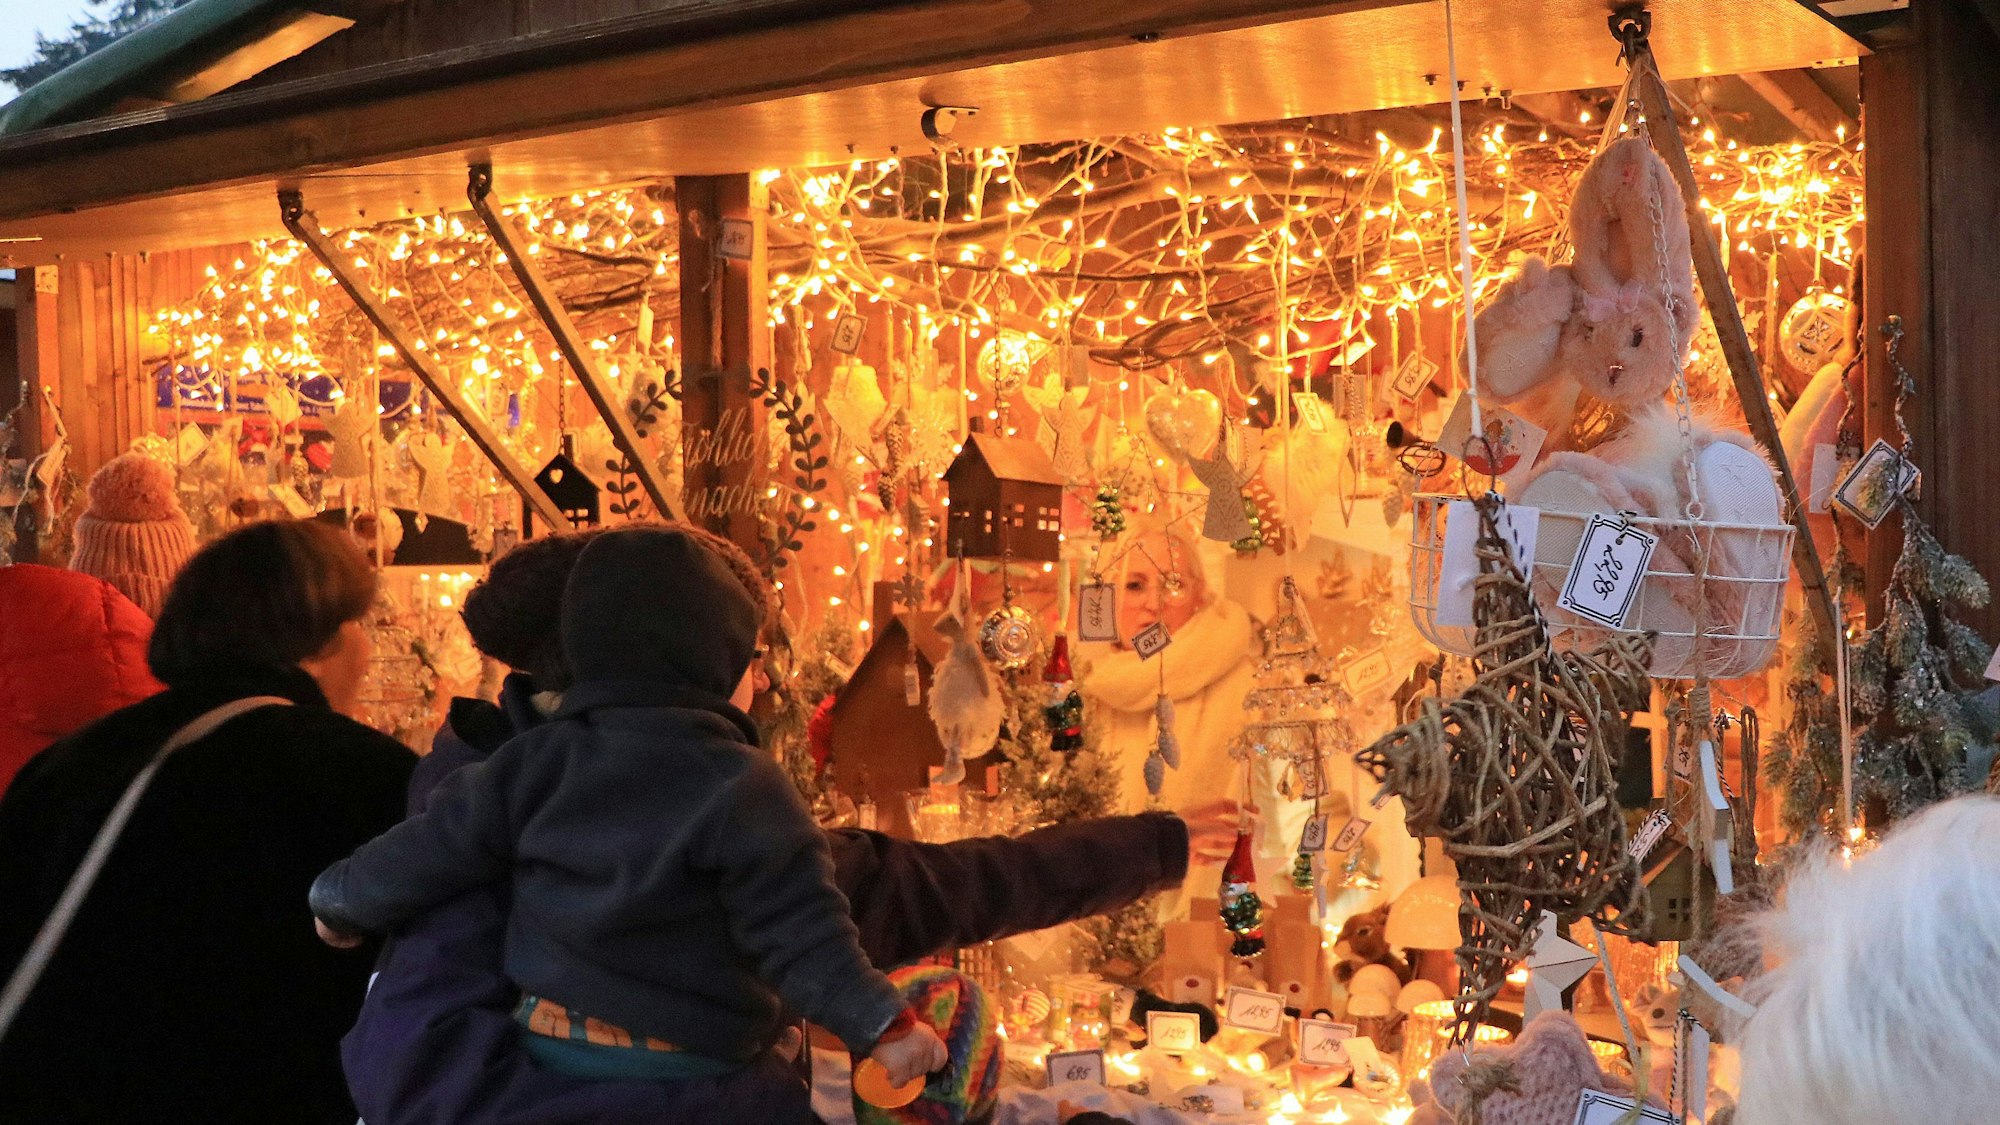 Auf dem Bild ist ein hell erleuchteter Stand auf dem Weihnachtsmarkt zu sehen.